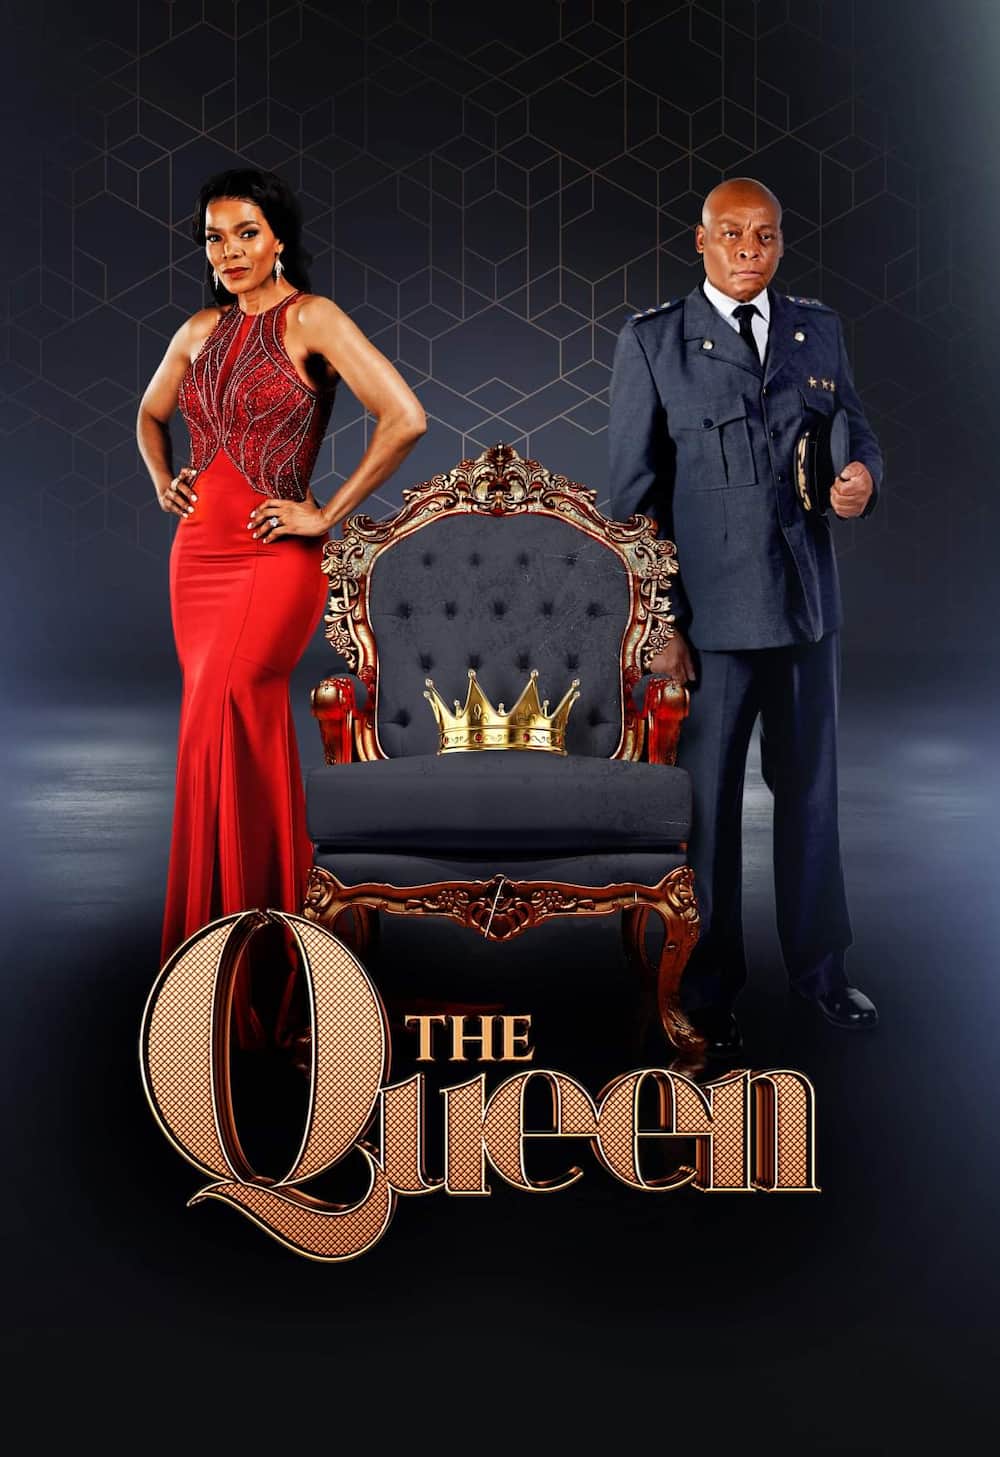 The Queen storyline